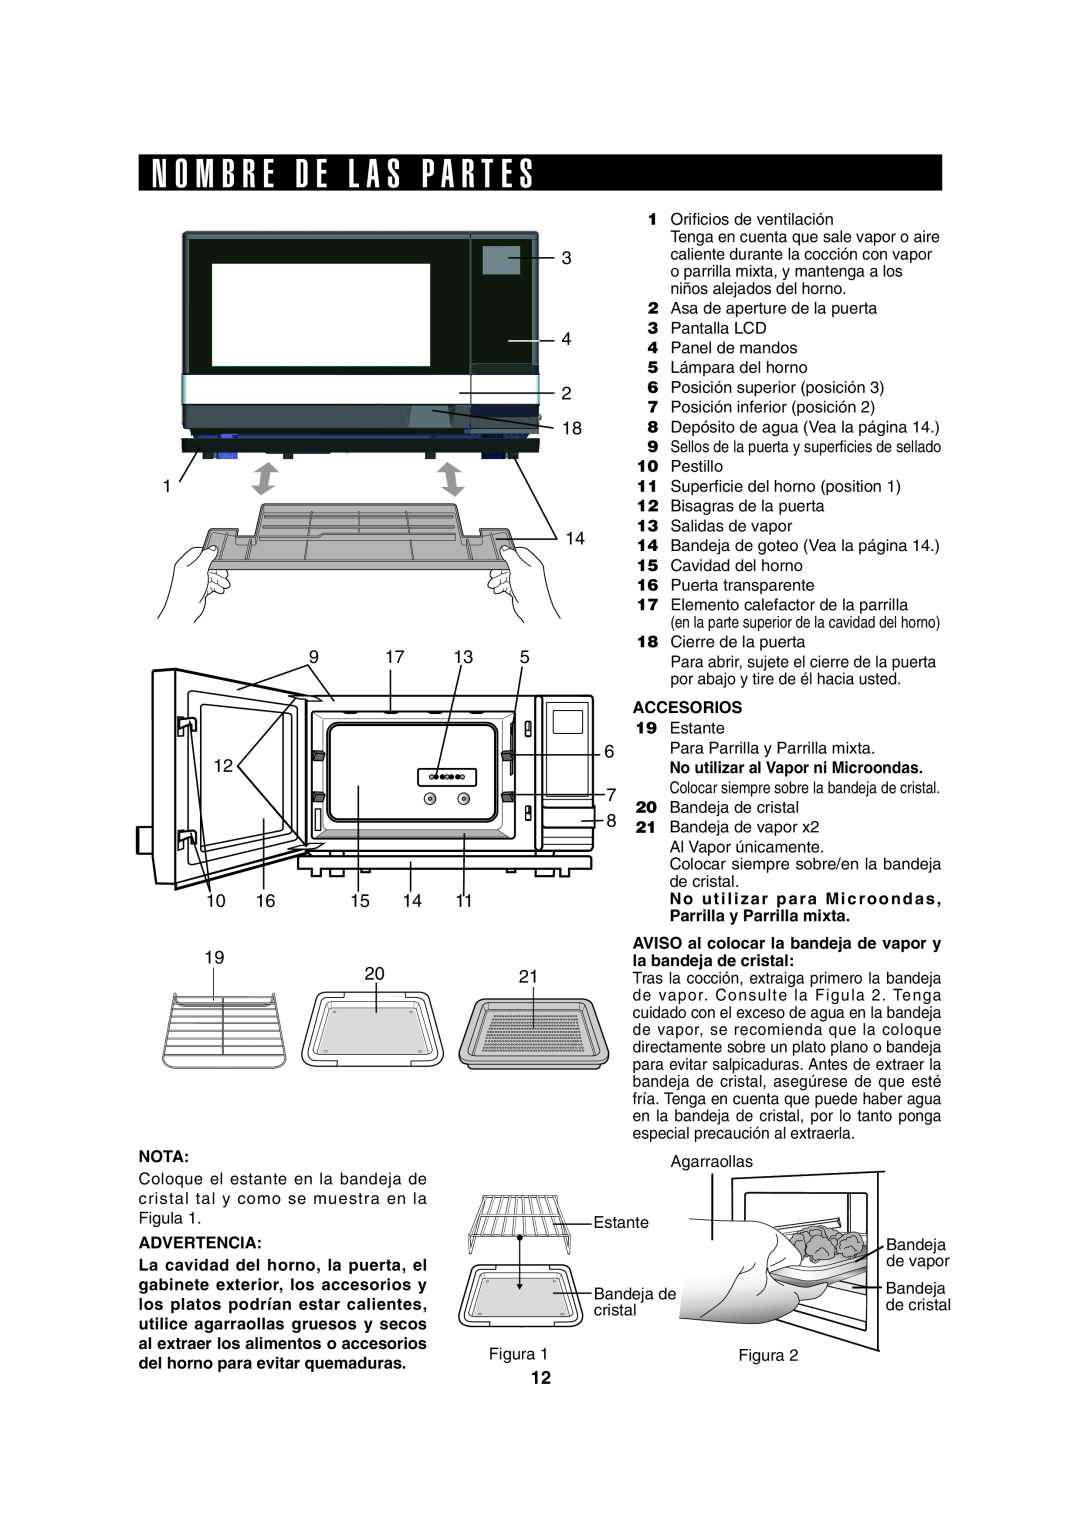 Sharp AX-1100S N O M B R E D E L A S P A R T E S, Accesorios, No utilizar para Microondas, Parrilla y Parrilla mixta, Nota 